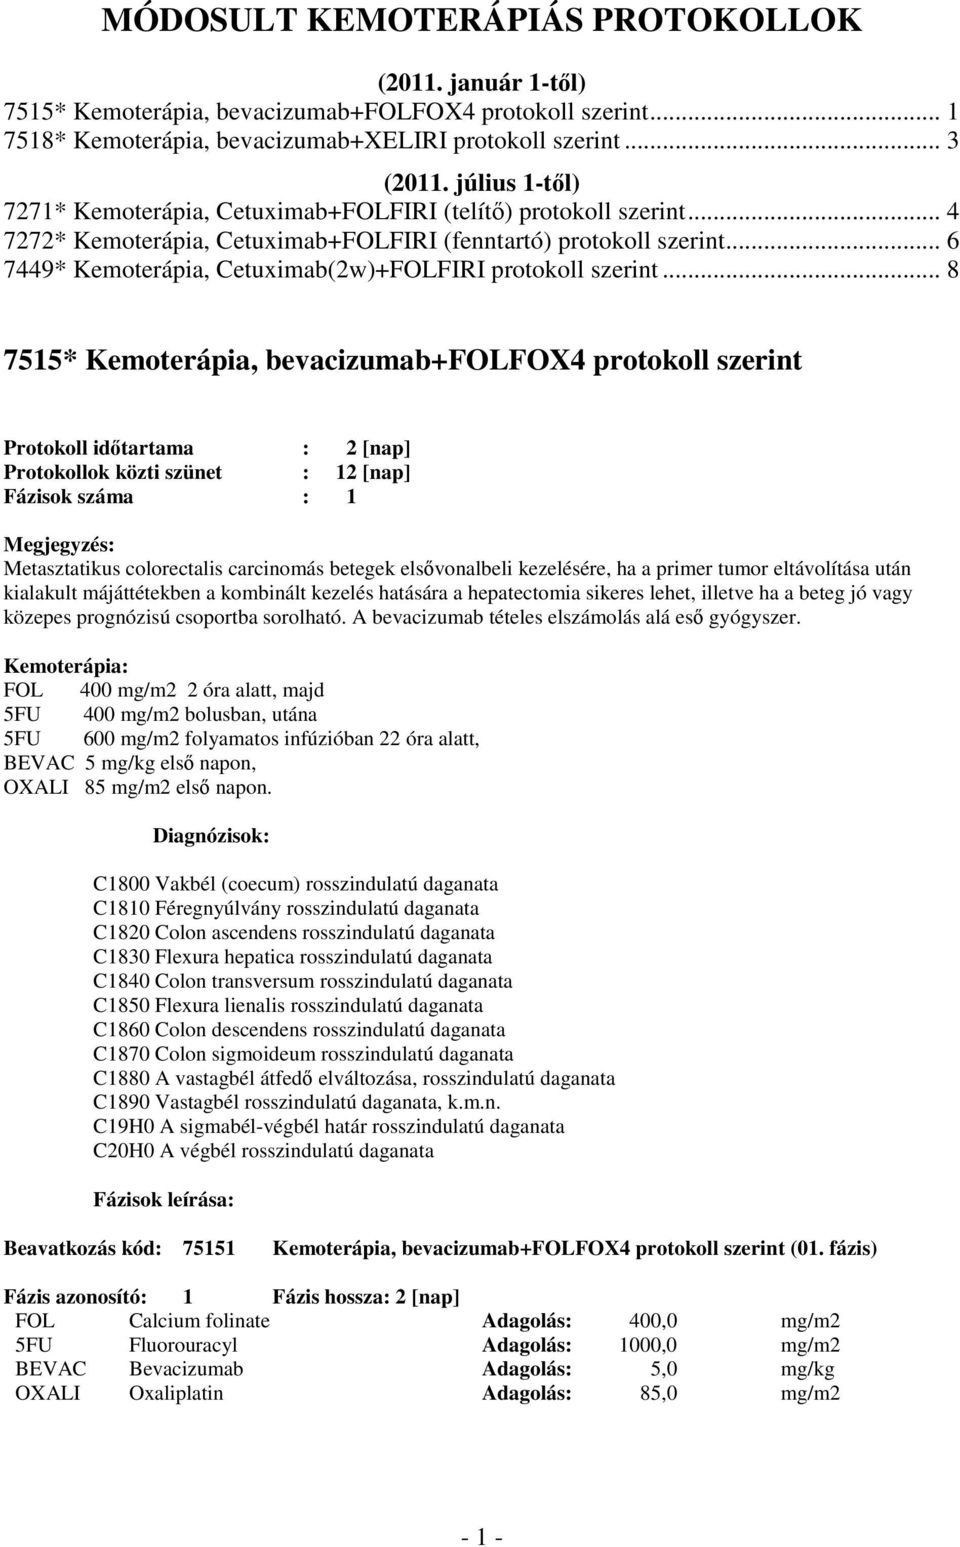 .. 6 7449* Kemoterápia, Cetuximab(2w)+FOLFIRI protokoll szerint.